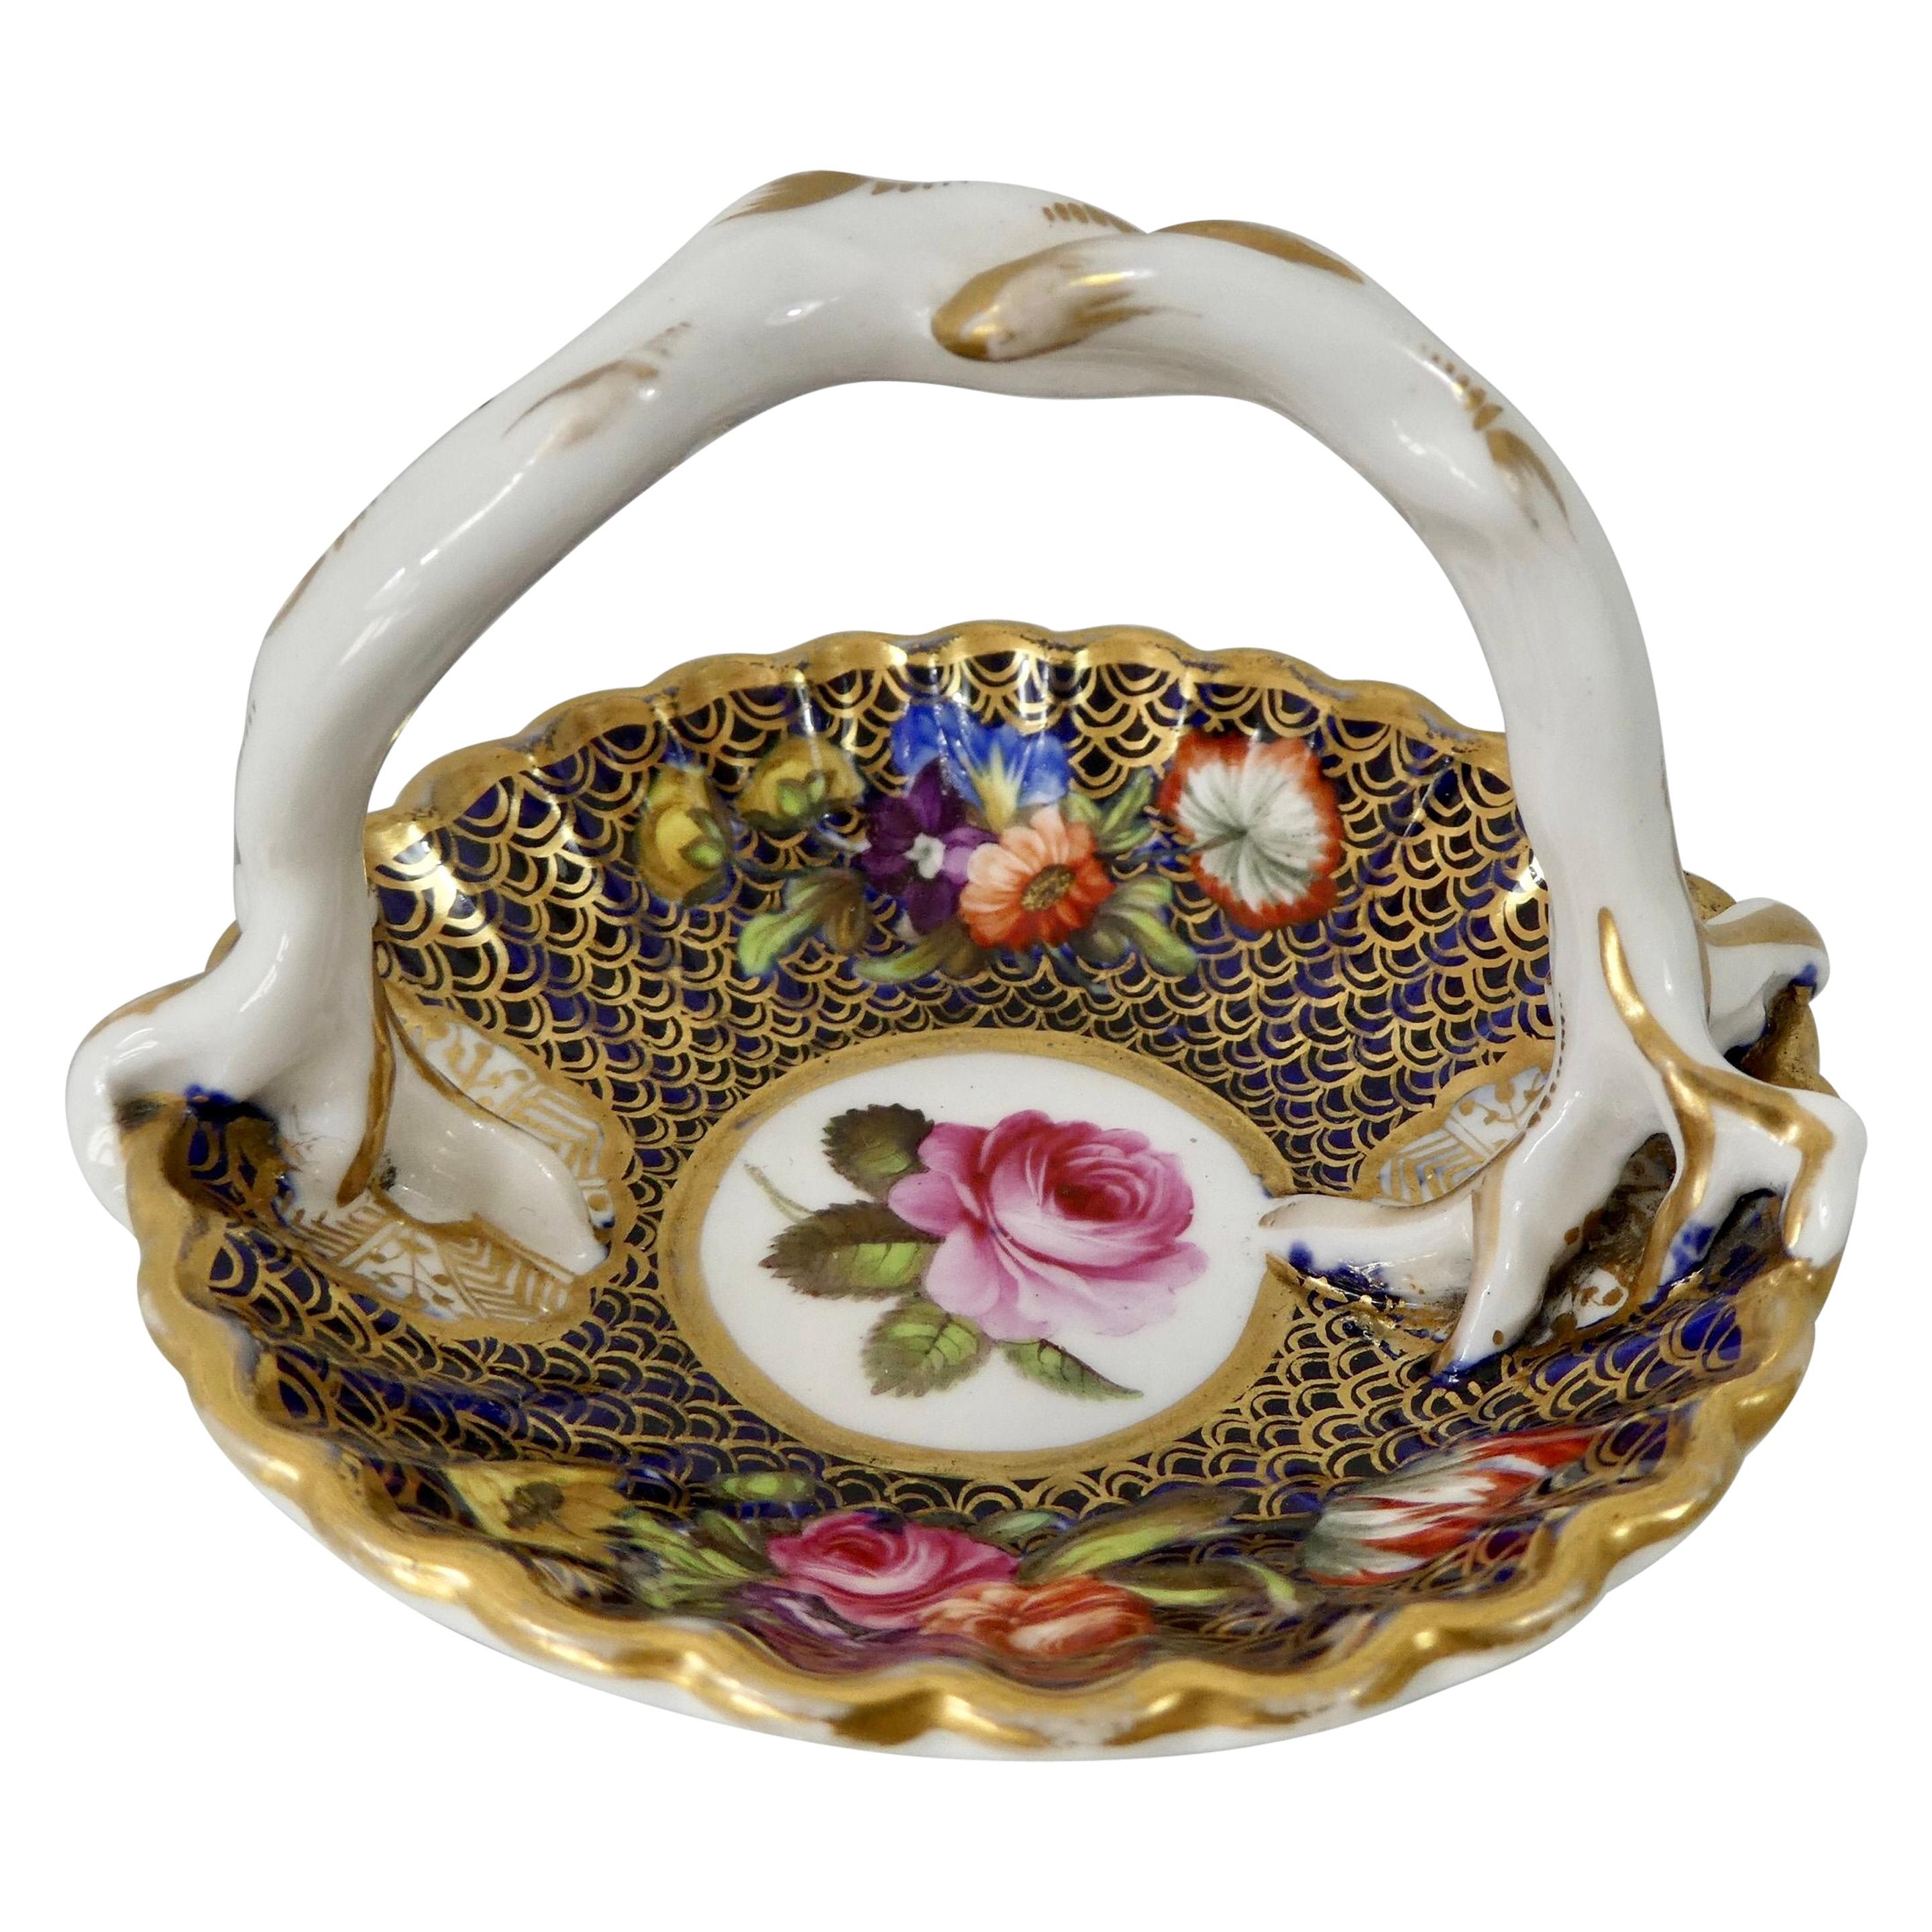 Spode Porcelain Miniature Basket, Pattern No. ‘1166’, circa 1810